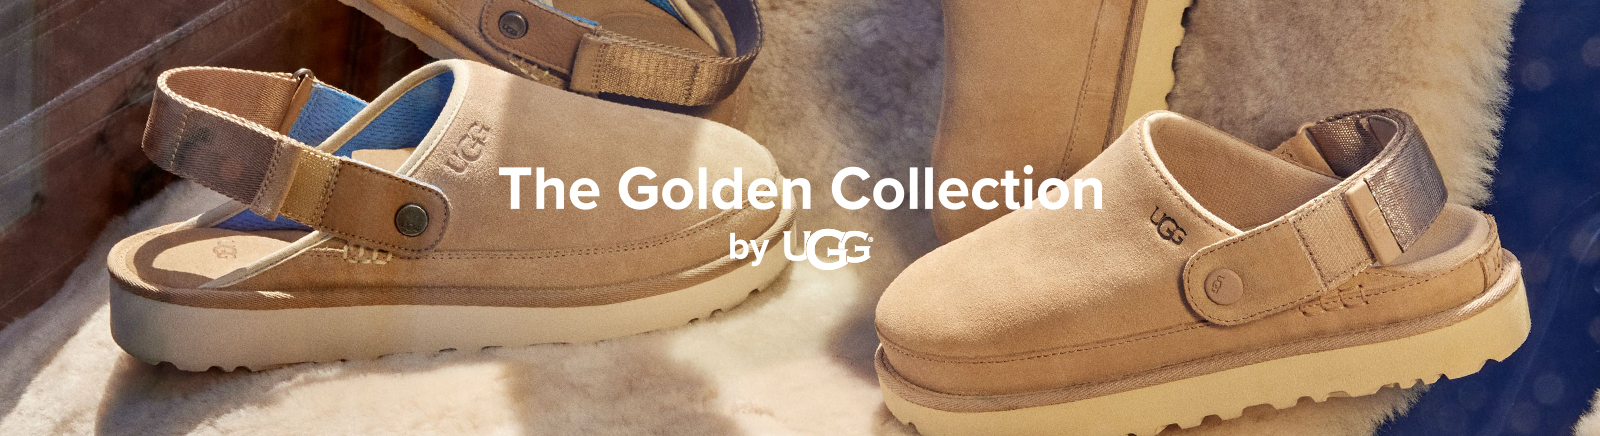 Juppen: UGG Stiefel für Mädchen und Jungen online shoppen